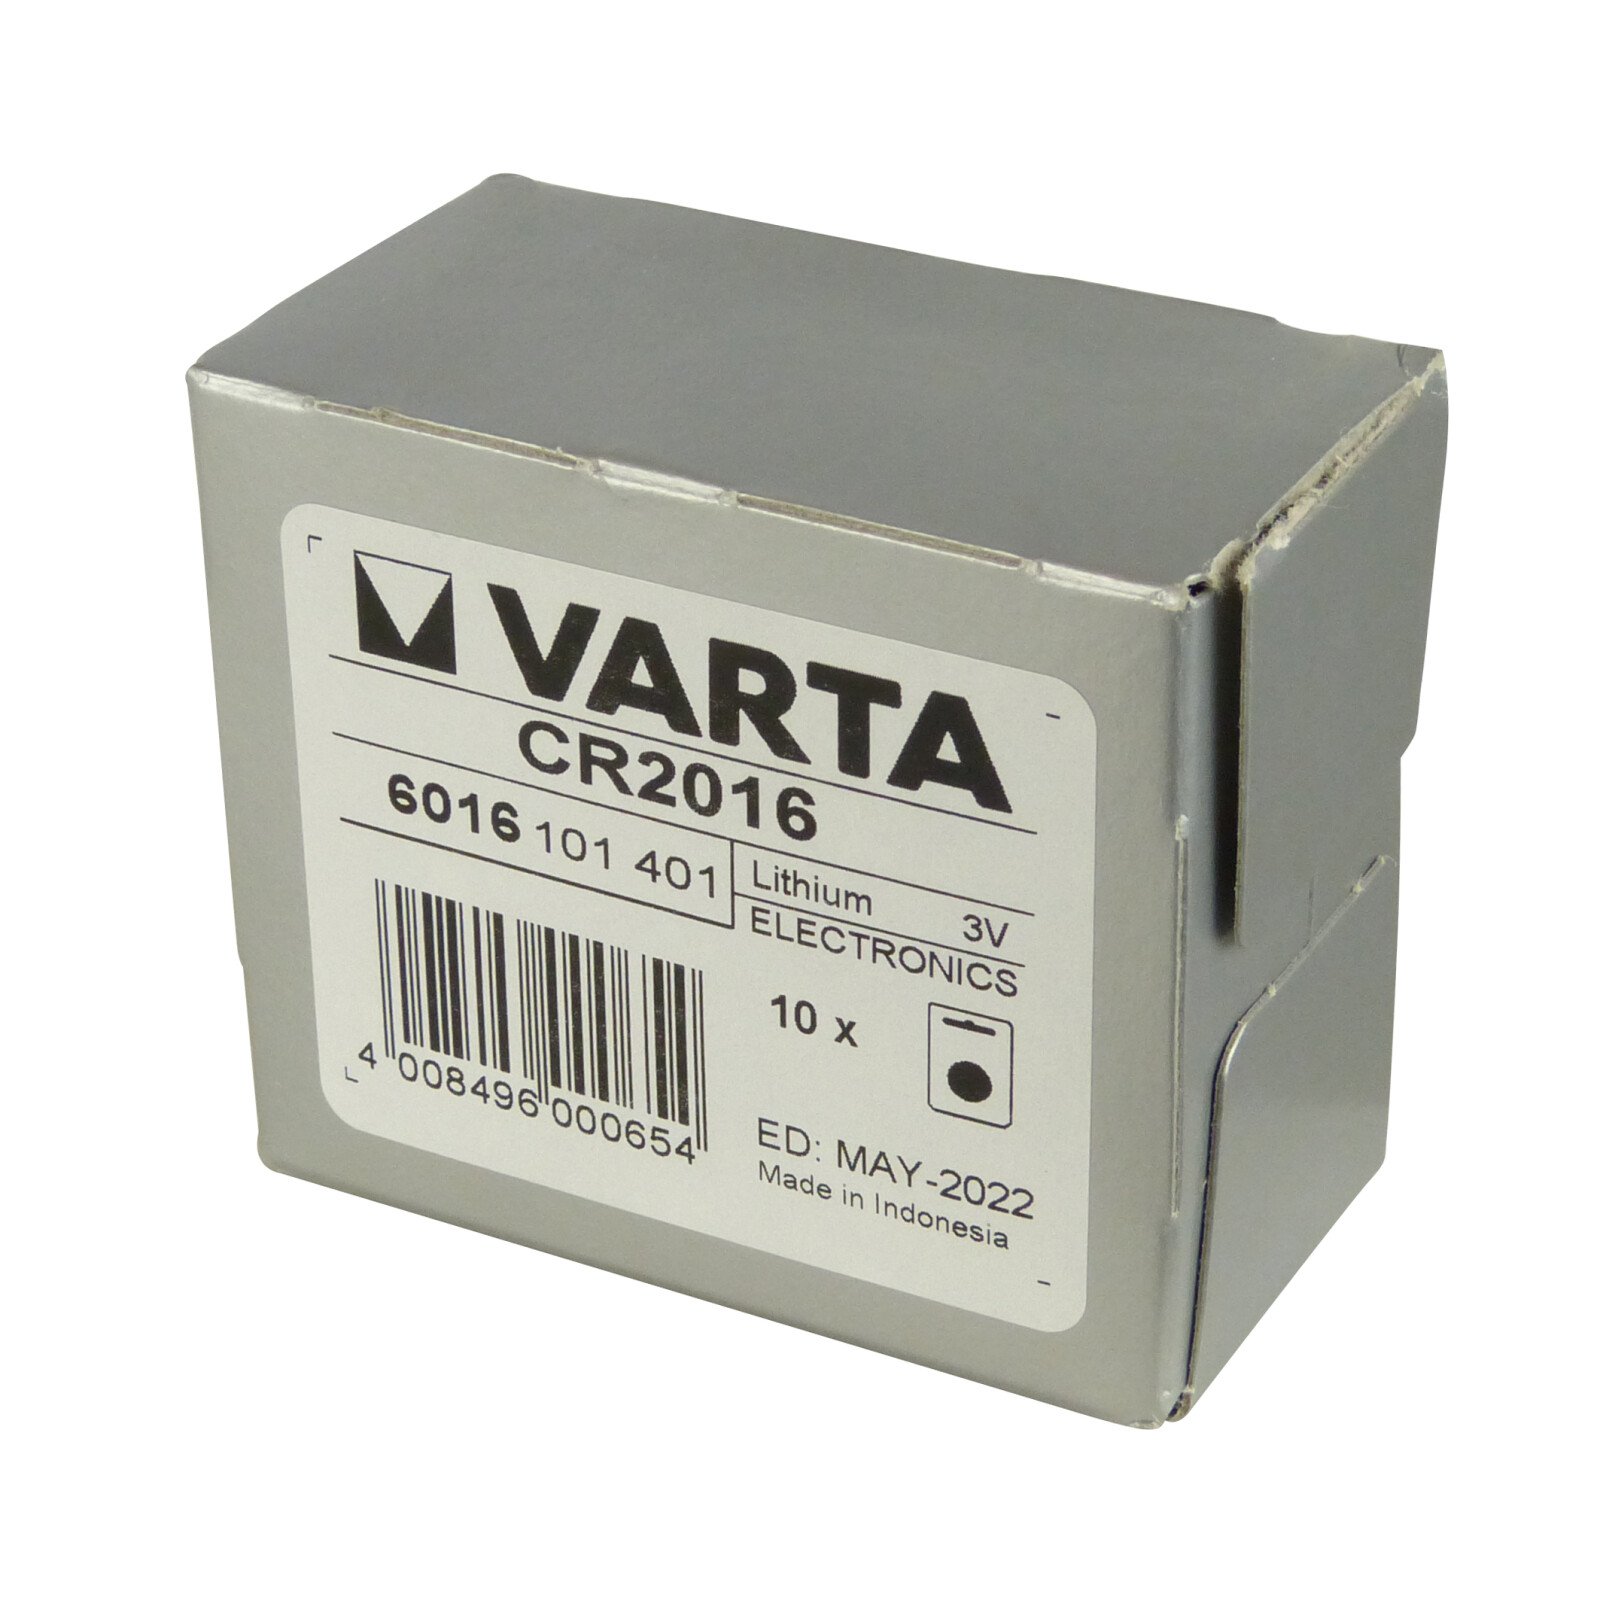 CR2016 lithium battery 3V 90mAh 1pcs Varta thumb